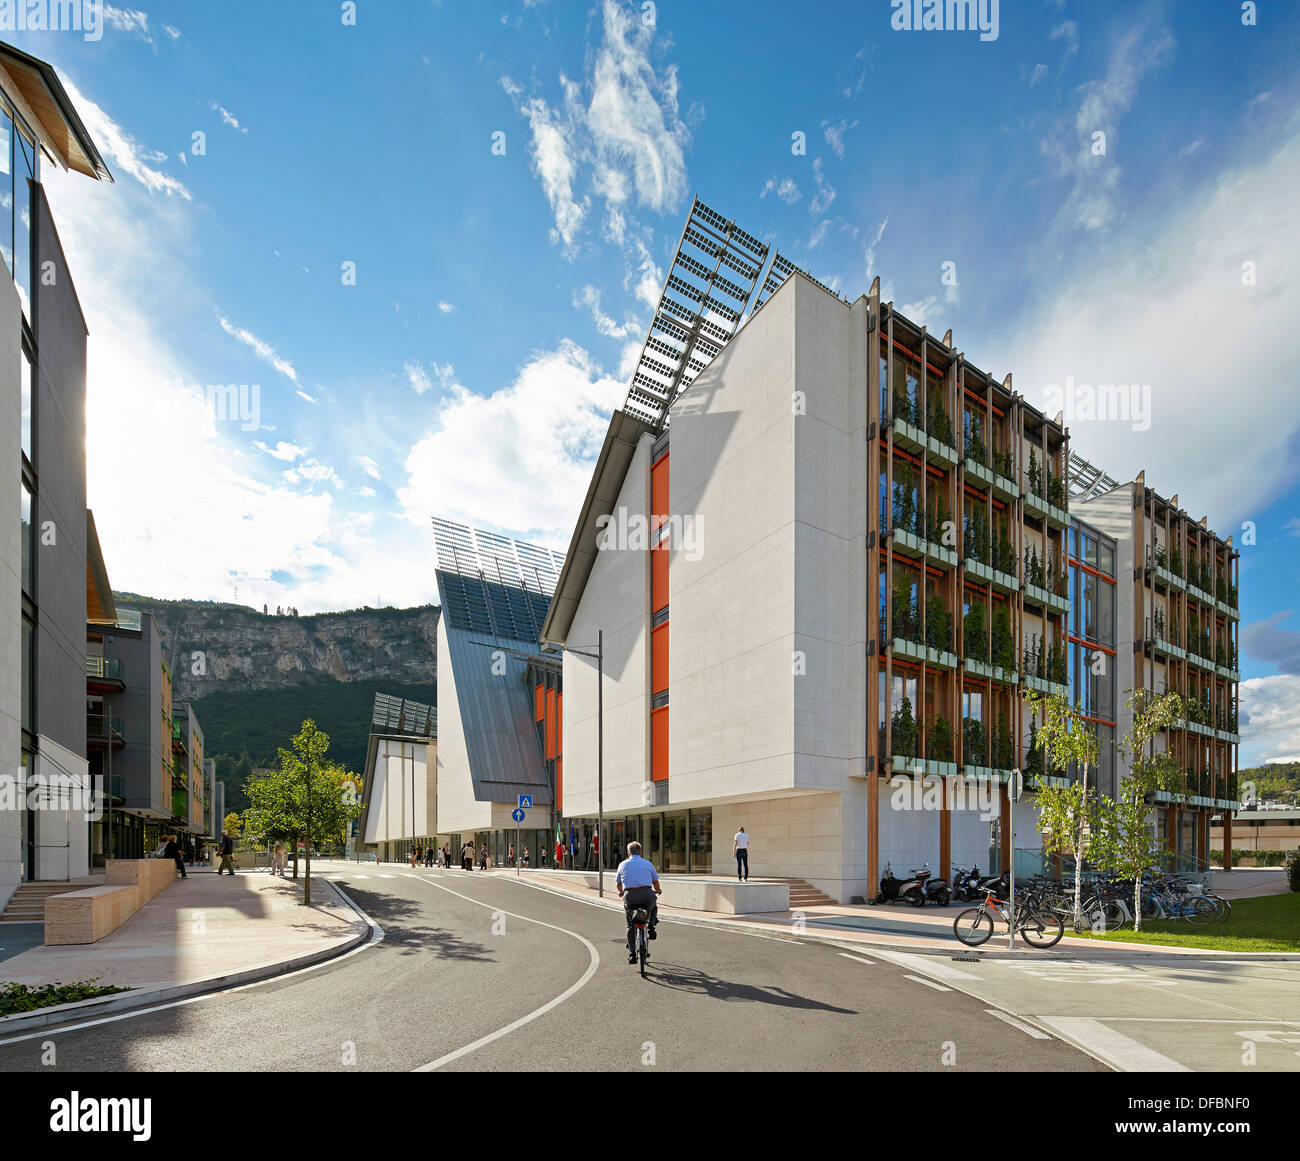 MUSE Science Museum, Trentino, en Italie. Architecte : Renzo Piano Building Workshop, 2013. Vue latérale sur la rue principale menant à ent Banque D'Images